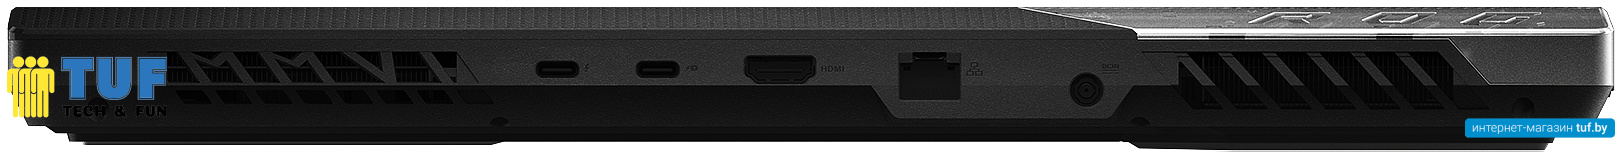 Игровой ноутбук ASUS ROG Strix SCAR 15 G533ZS-LN042